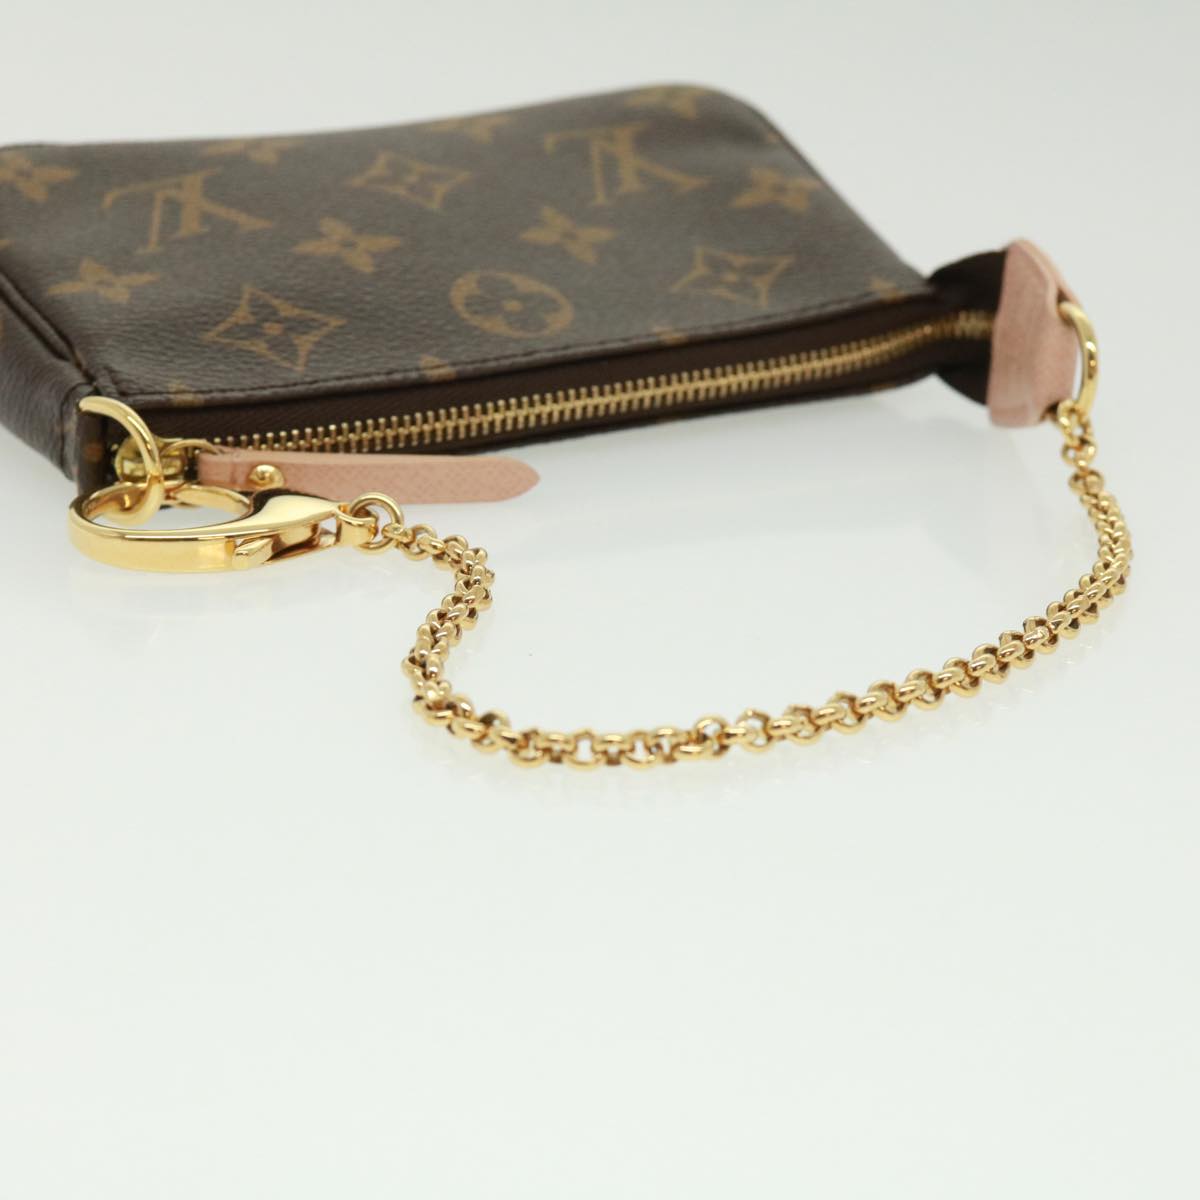 Louis Vuitton Monogram Canvas Mini Pochette Accessoires Bag